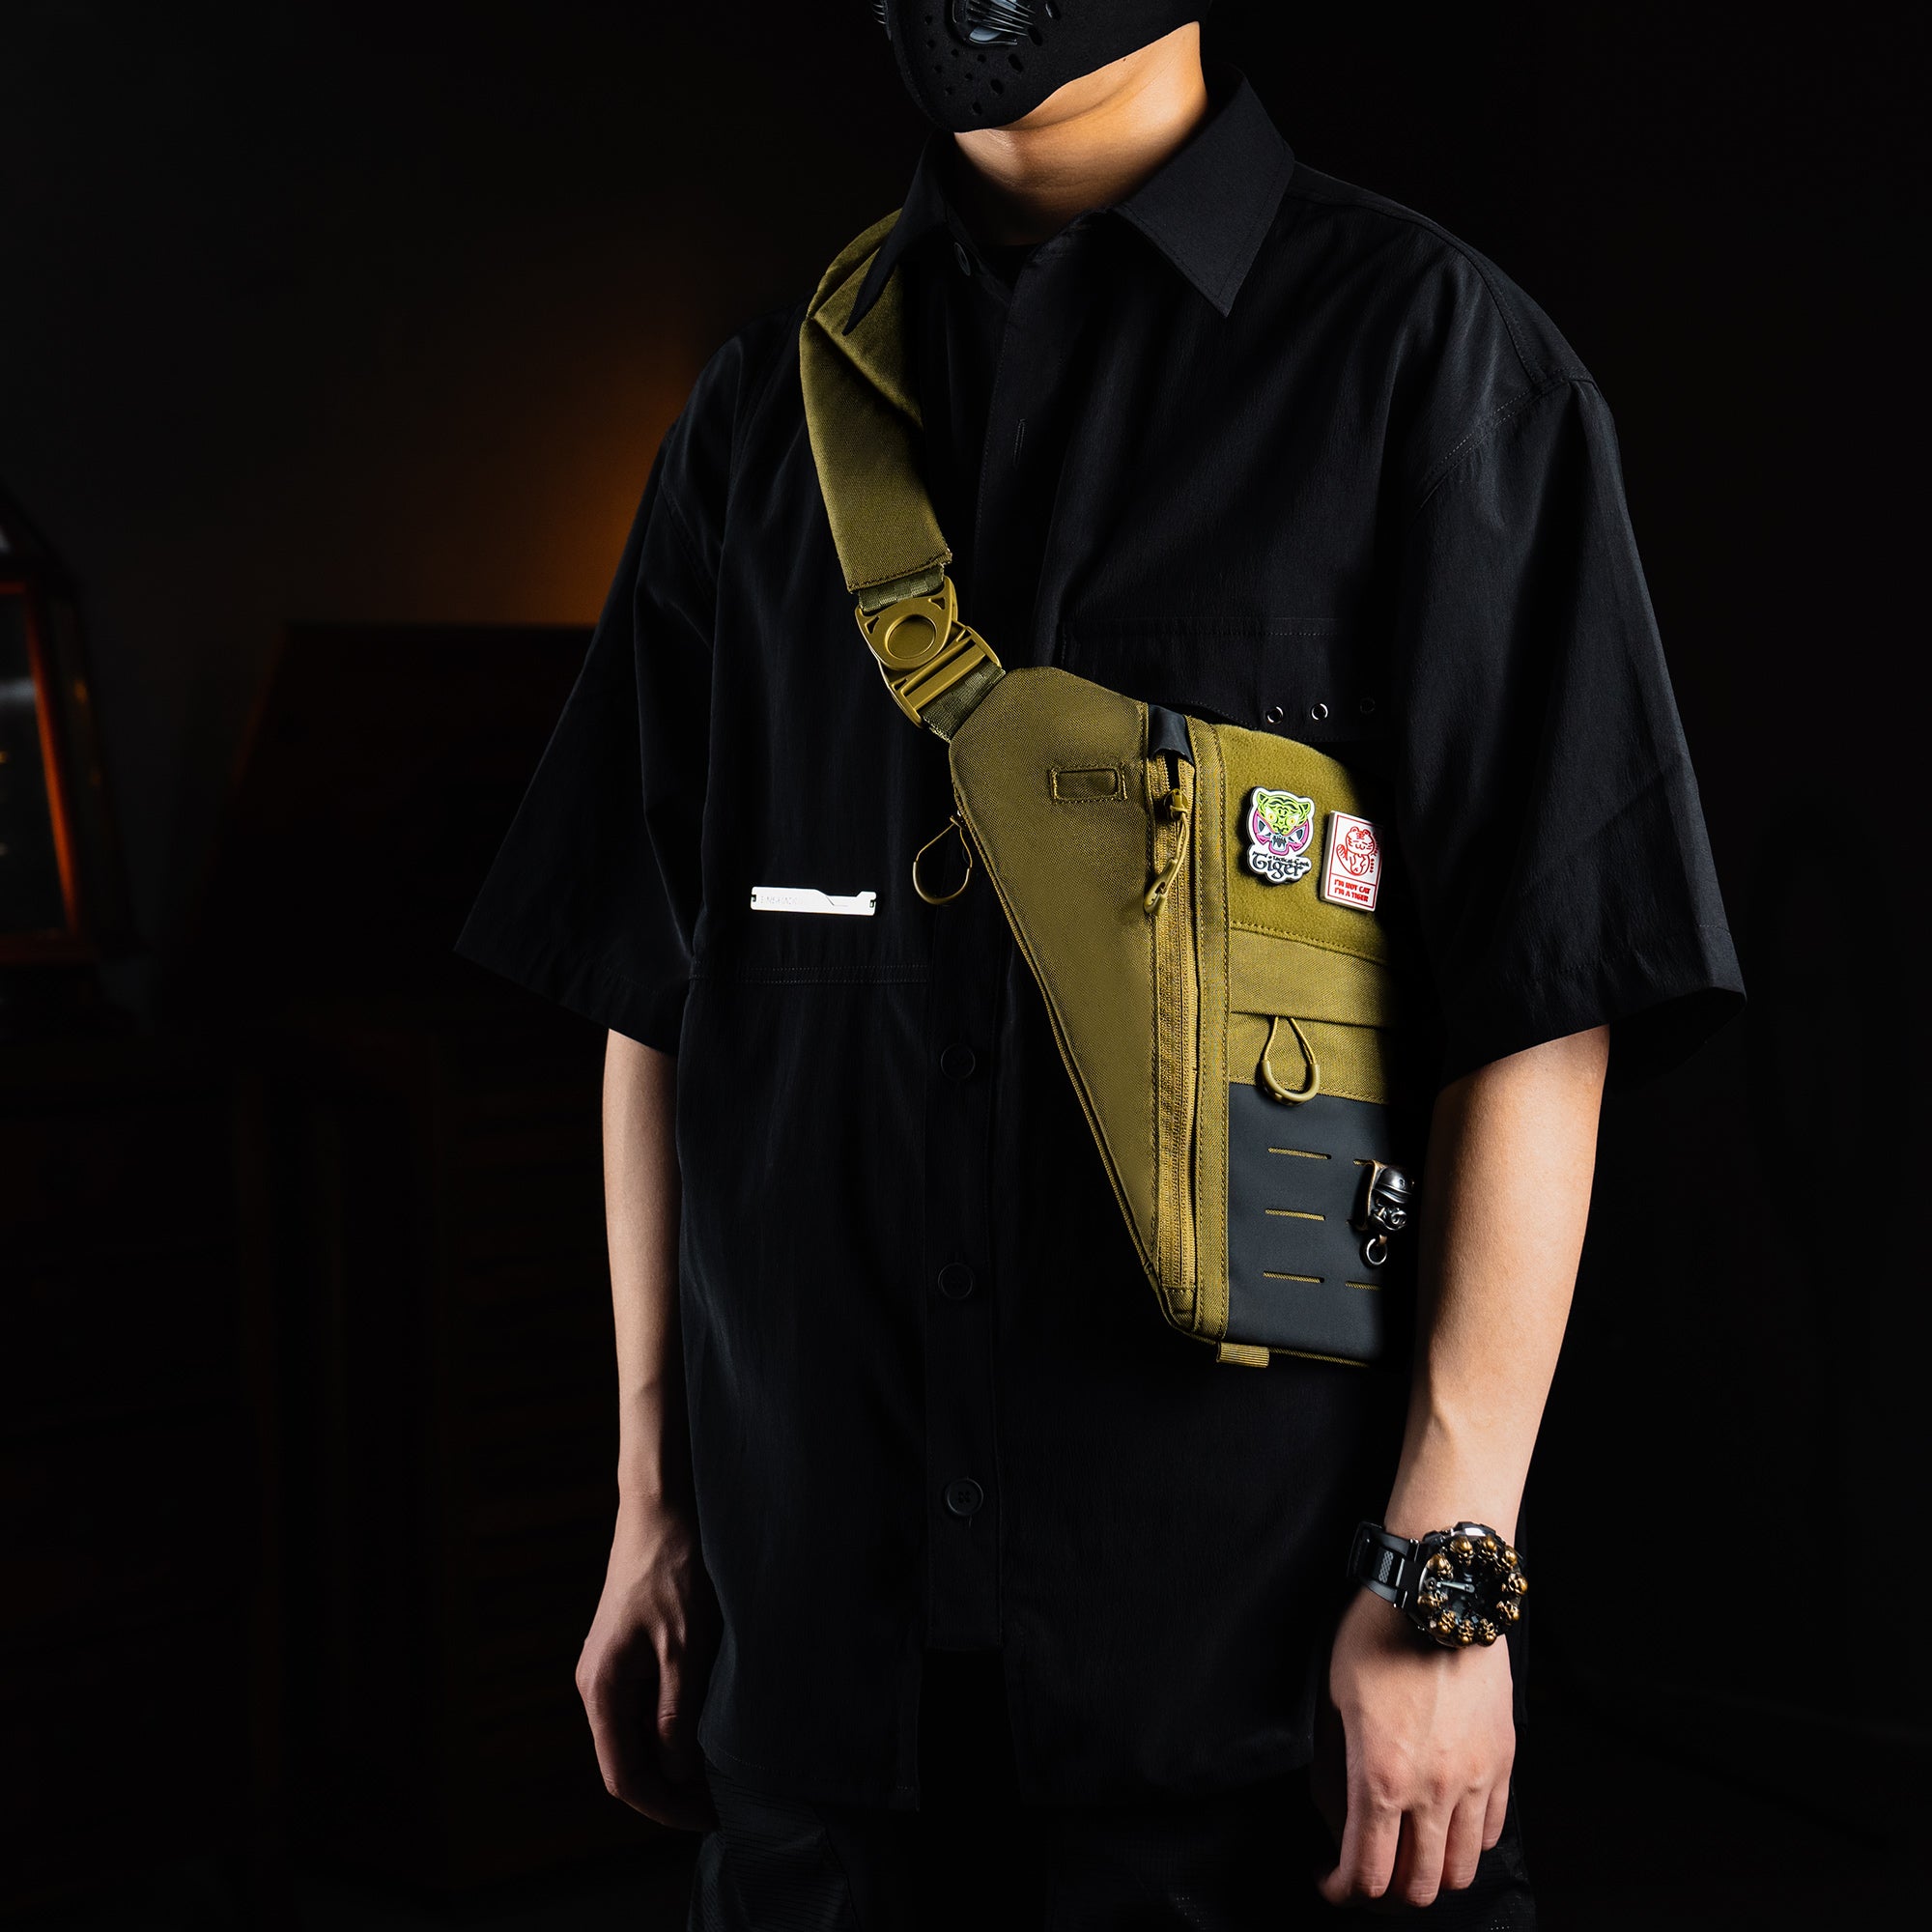 Cache L1 Concealed Carry Shoulder Bag （Tan）